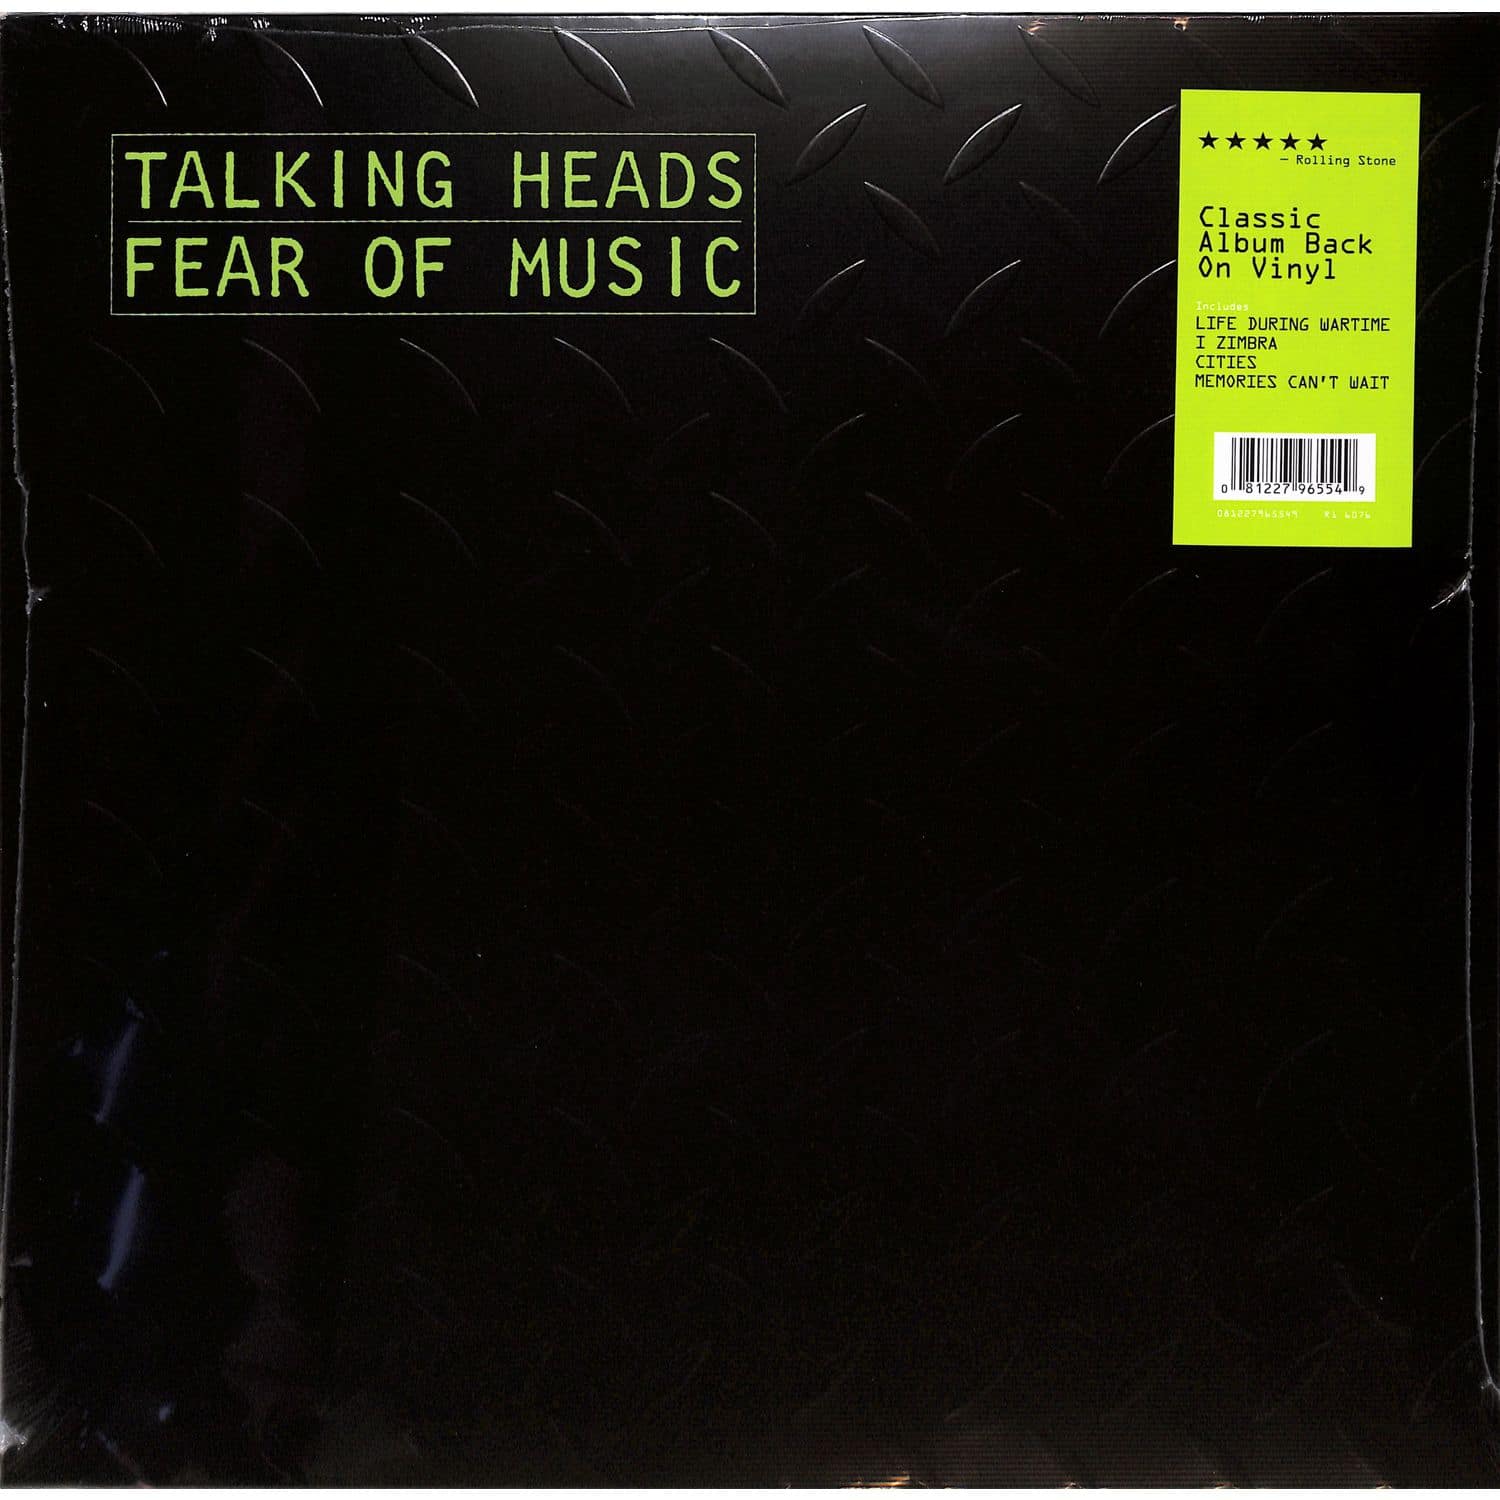 Talking Heads - FEAR OF MUSIC